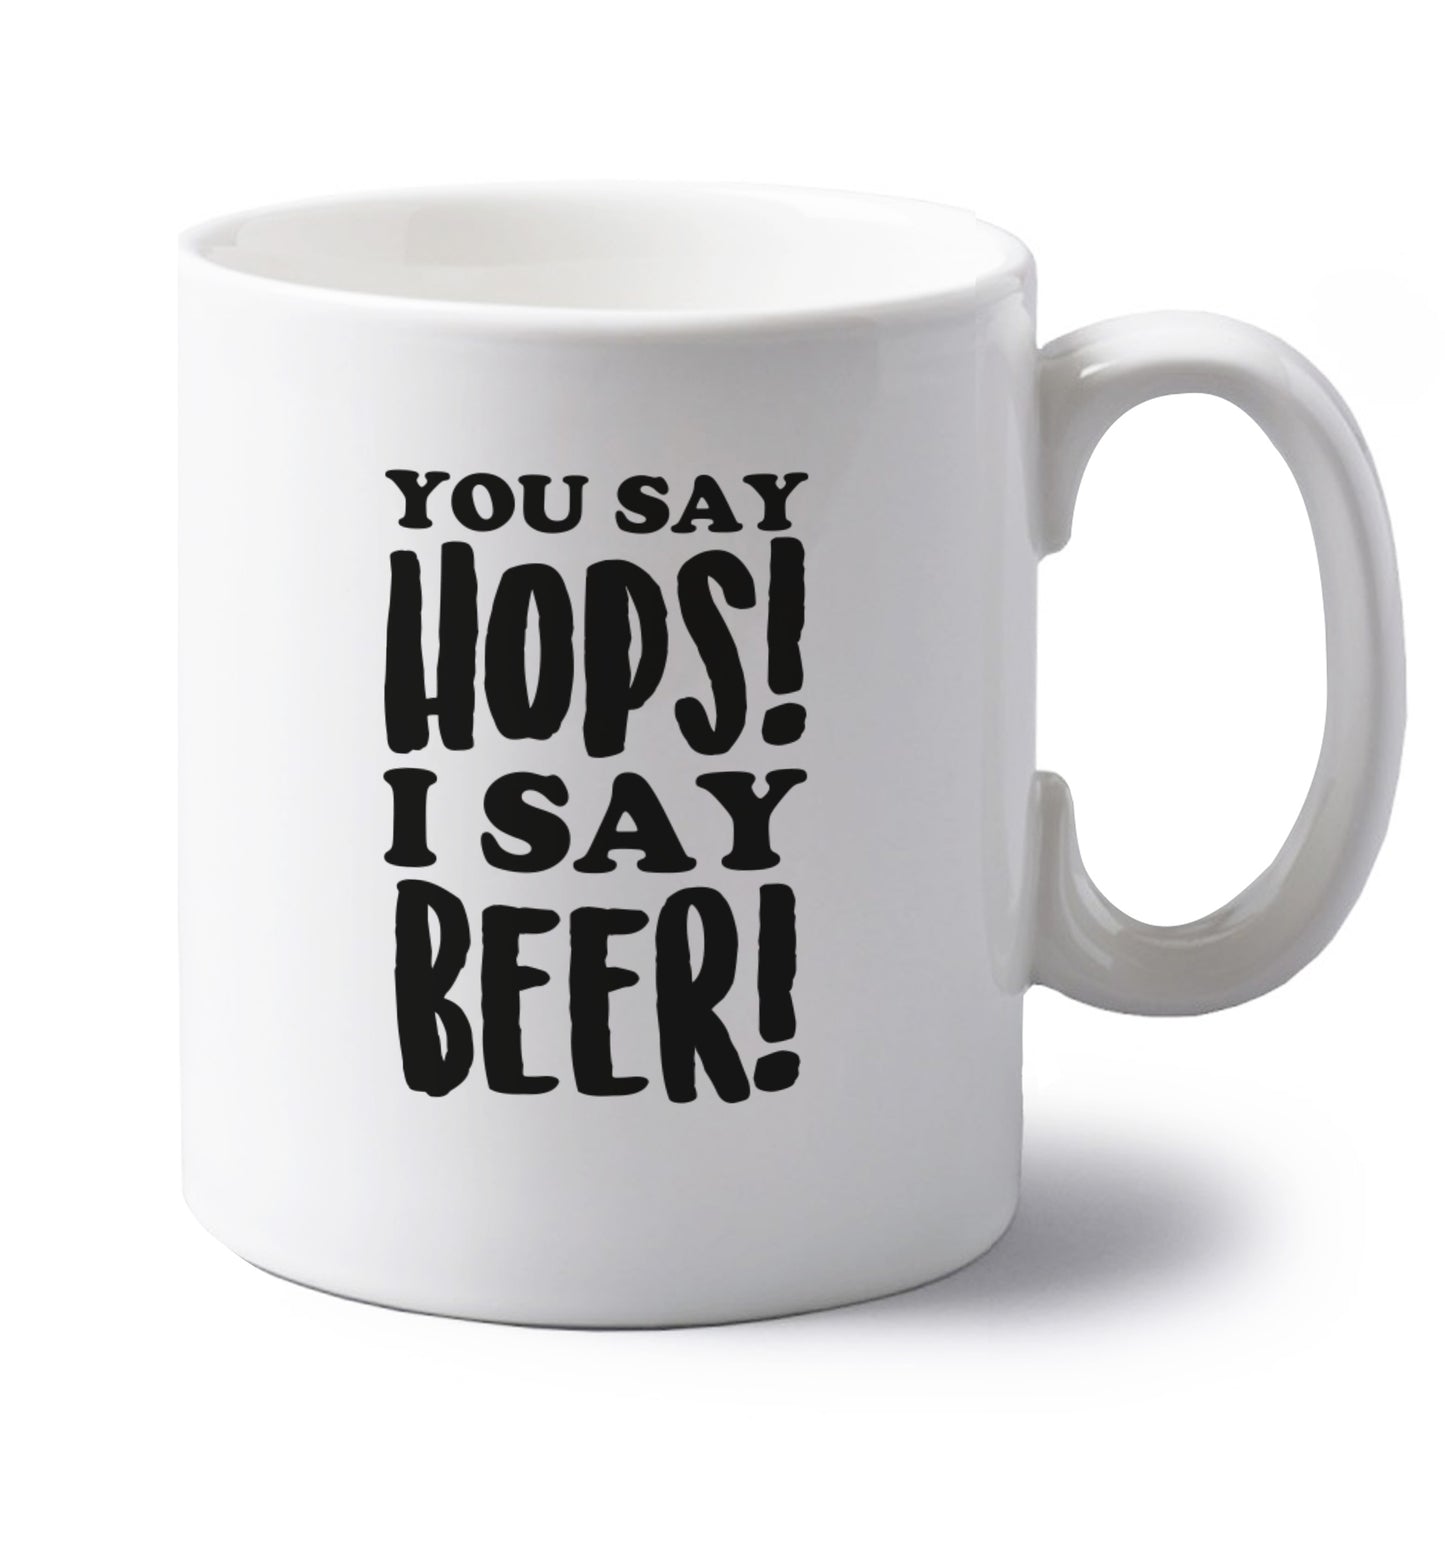 You say hops I say beer! left handed white ceramic mug 